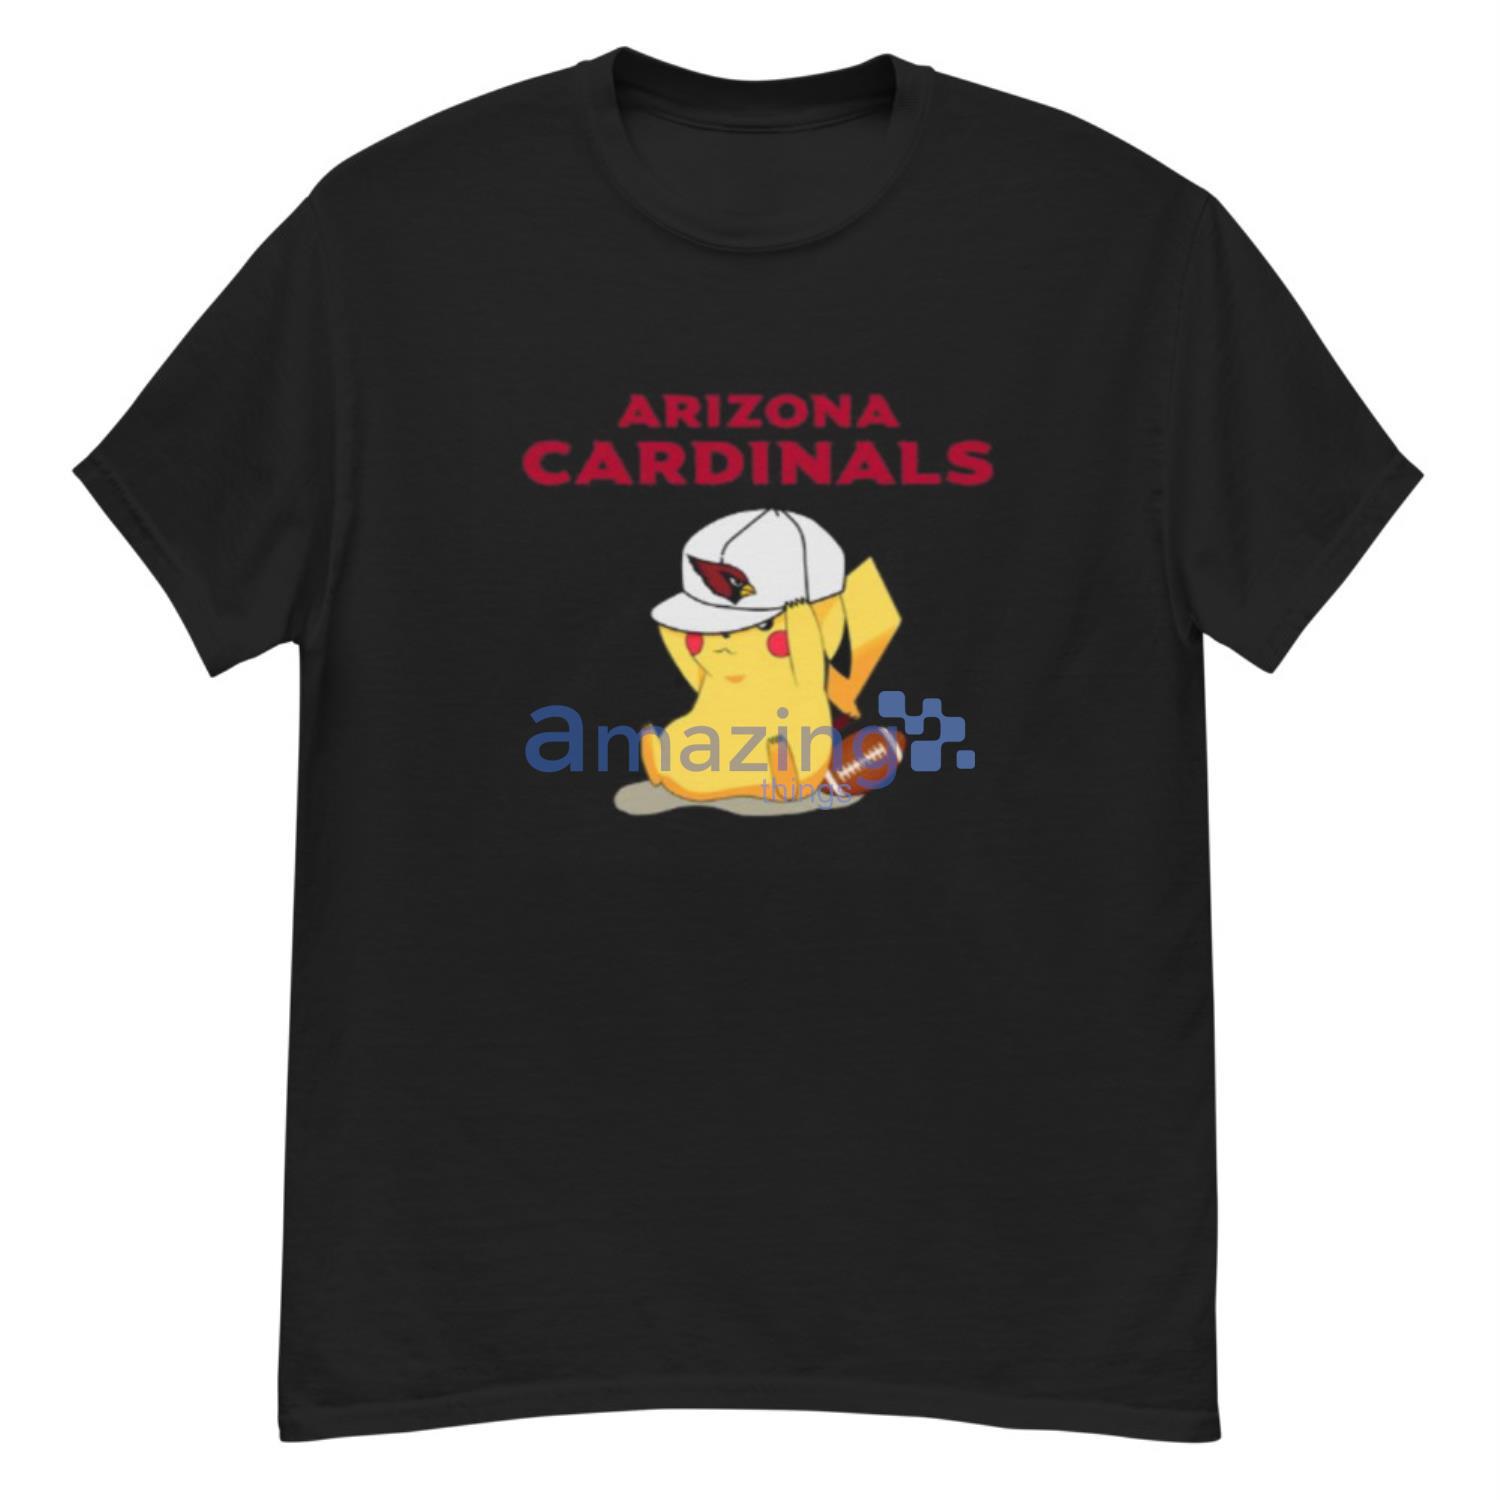 Arizona Cardinals Baseball Jersey Pikachu NFL Pokemon